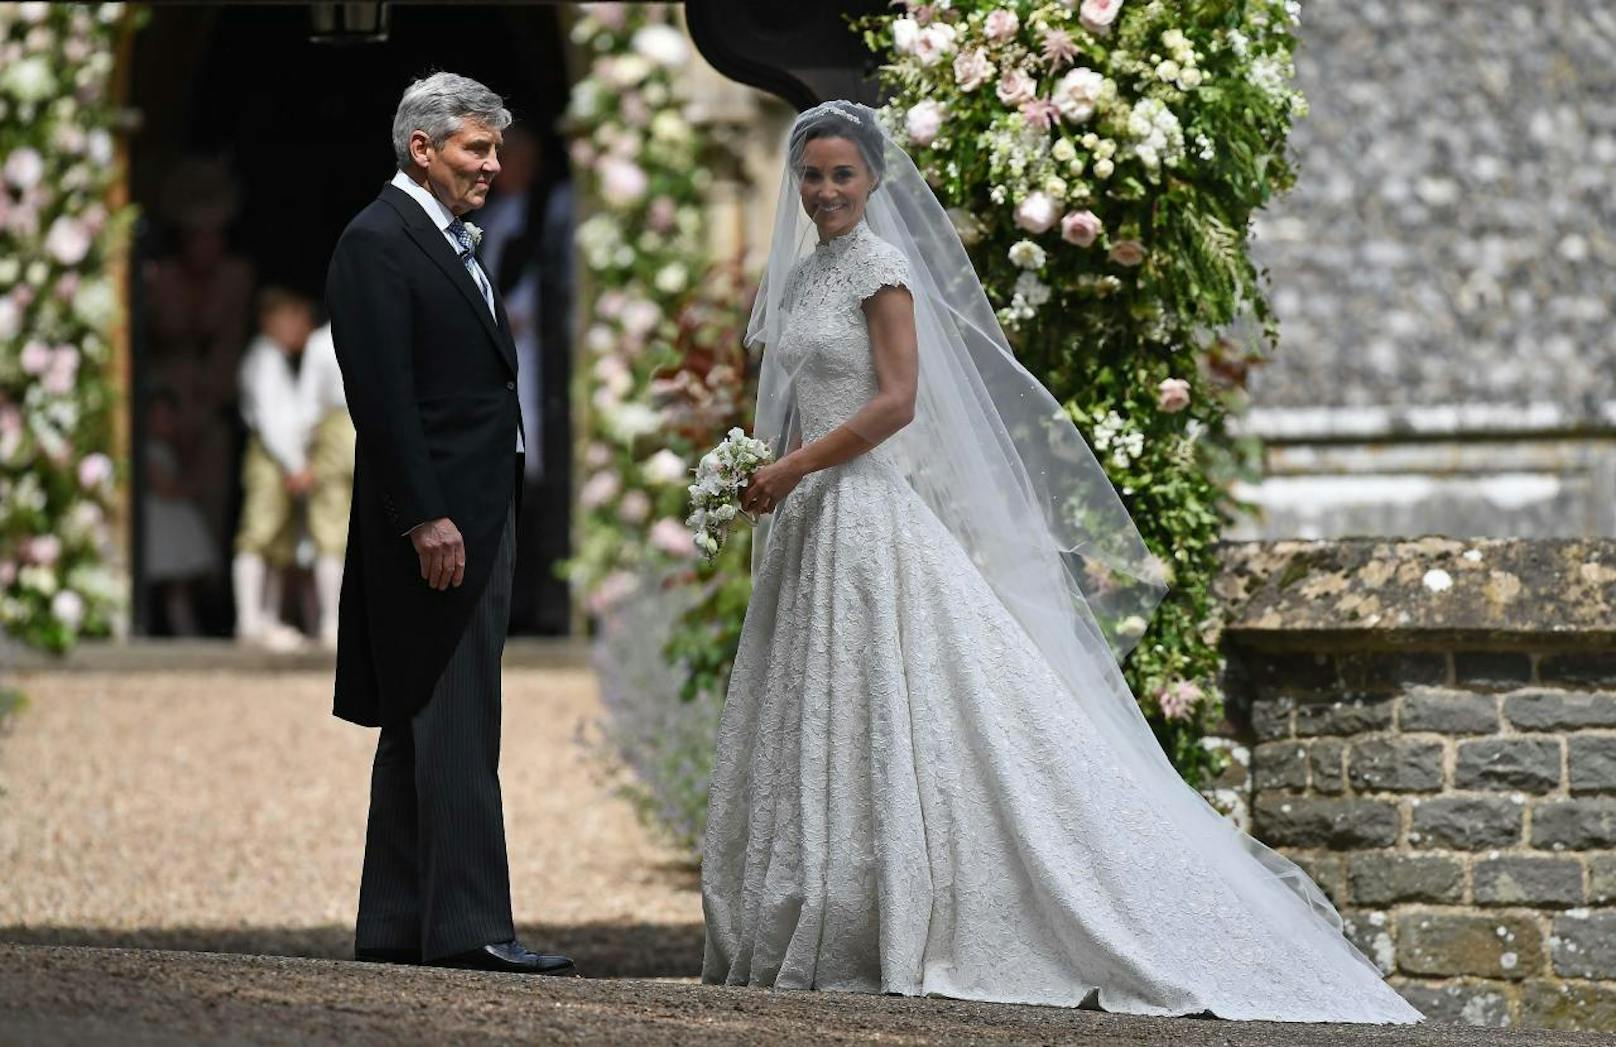 Pippa Middleton strahlt in einem wunderschönen weißen Hochzeitskleid aus Spitze. Ihr Vater Michael Middleton führt sie zum Altar.